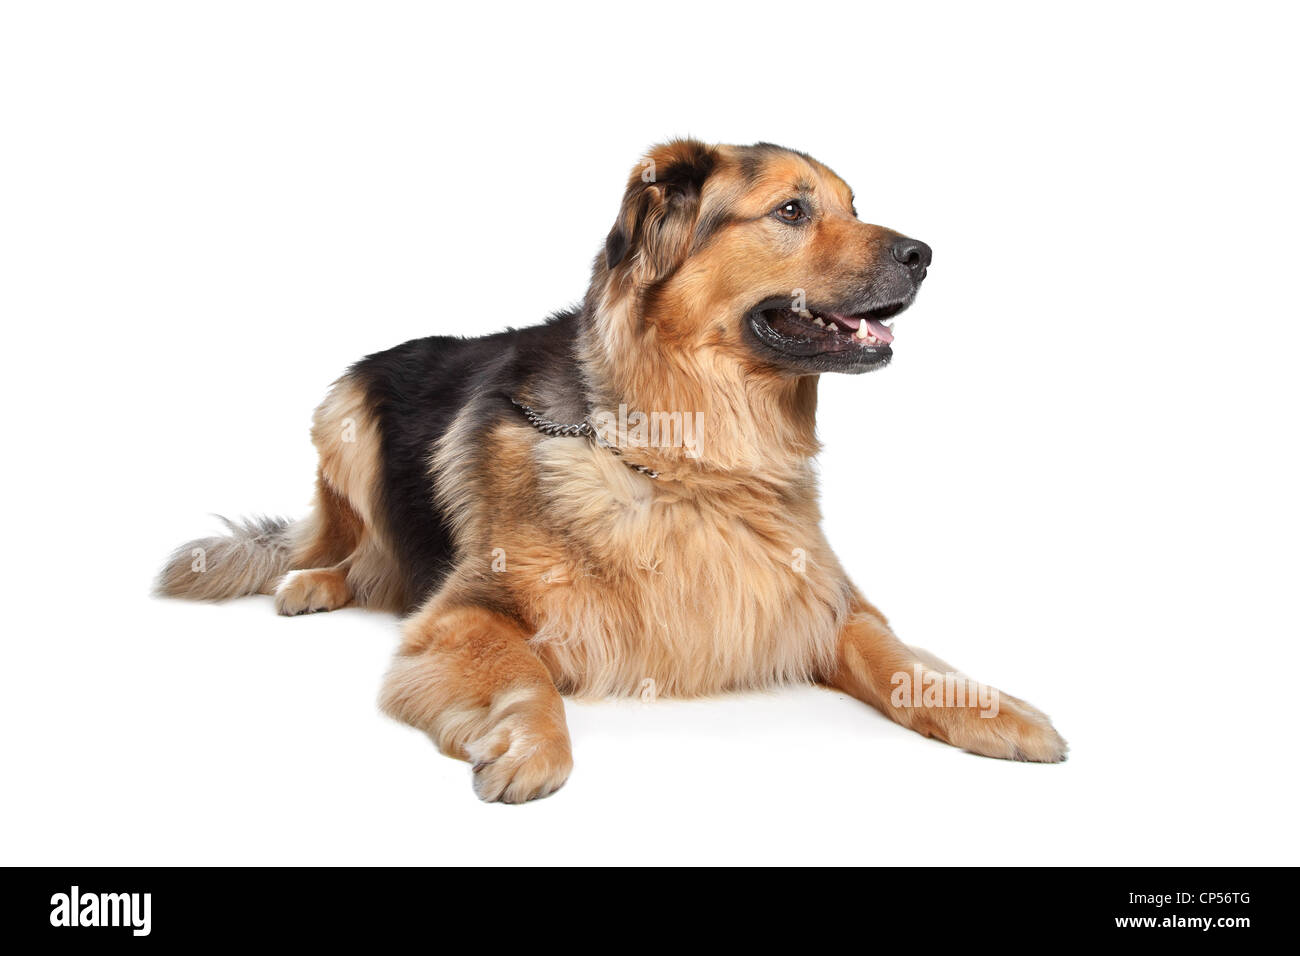 Mischling Hund. Holländischer Schäferhund, Dogge de Bordeaux  Stockfotografie - Alamy